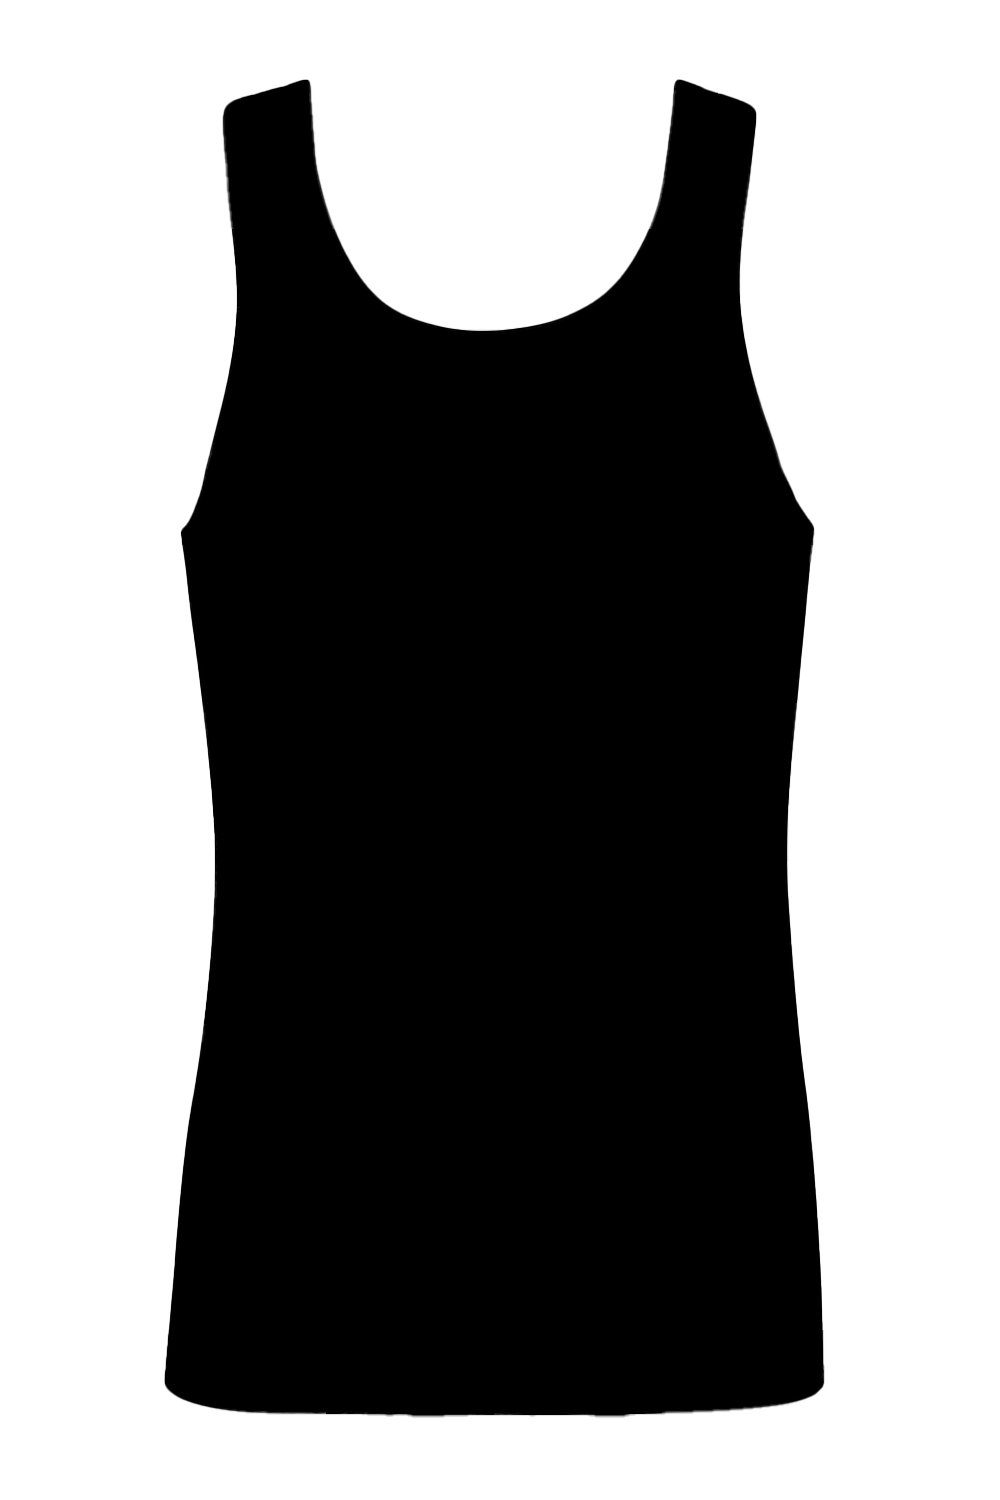 Achselhemd Lisca schwarz 31009 Unterhemd